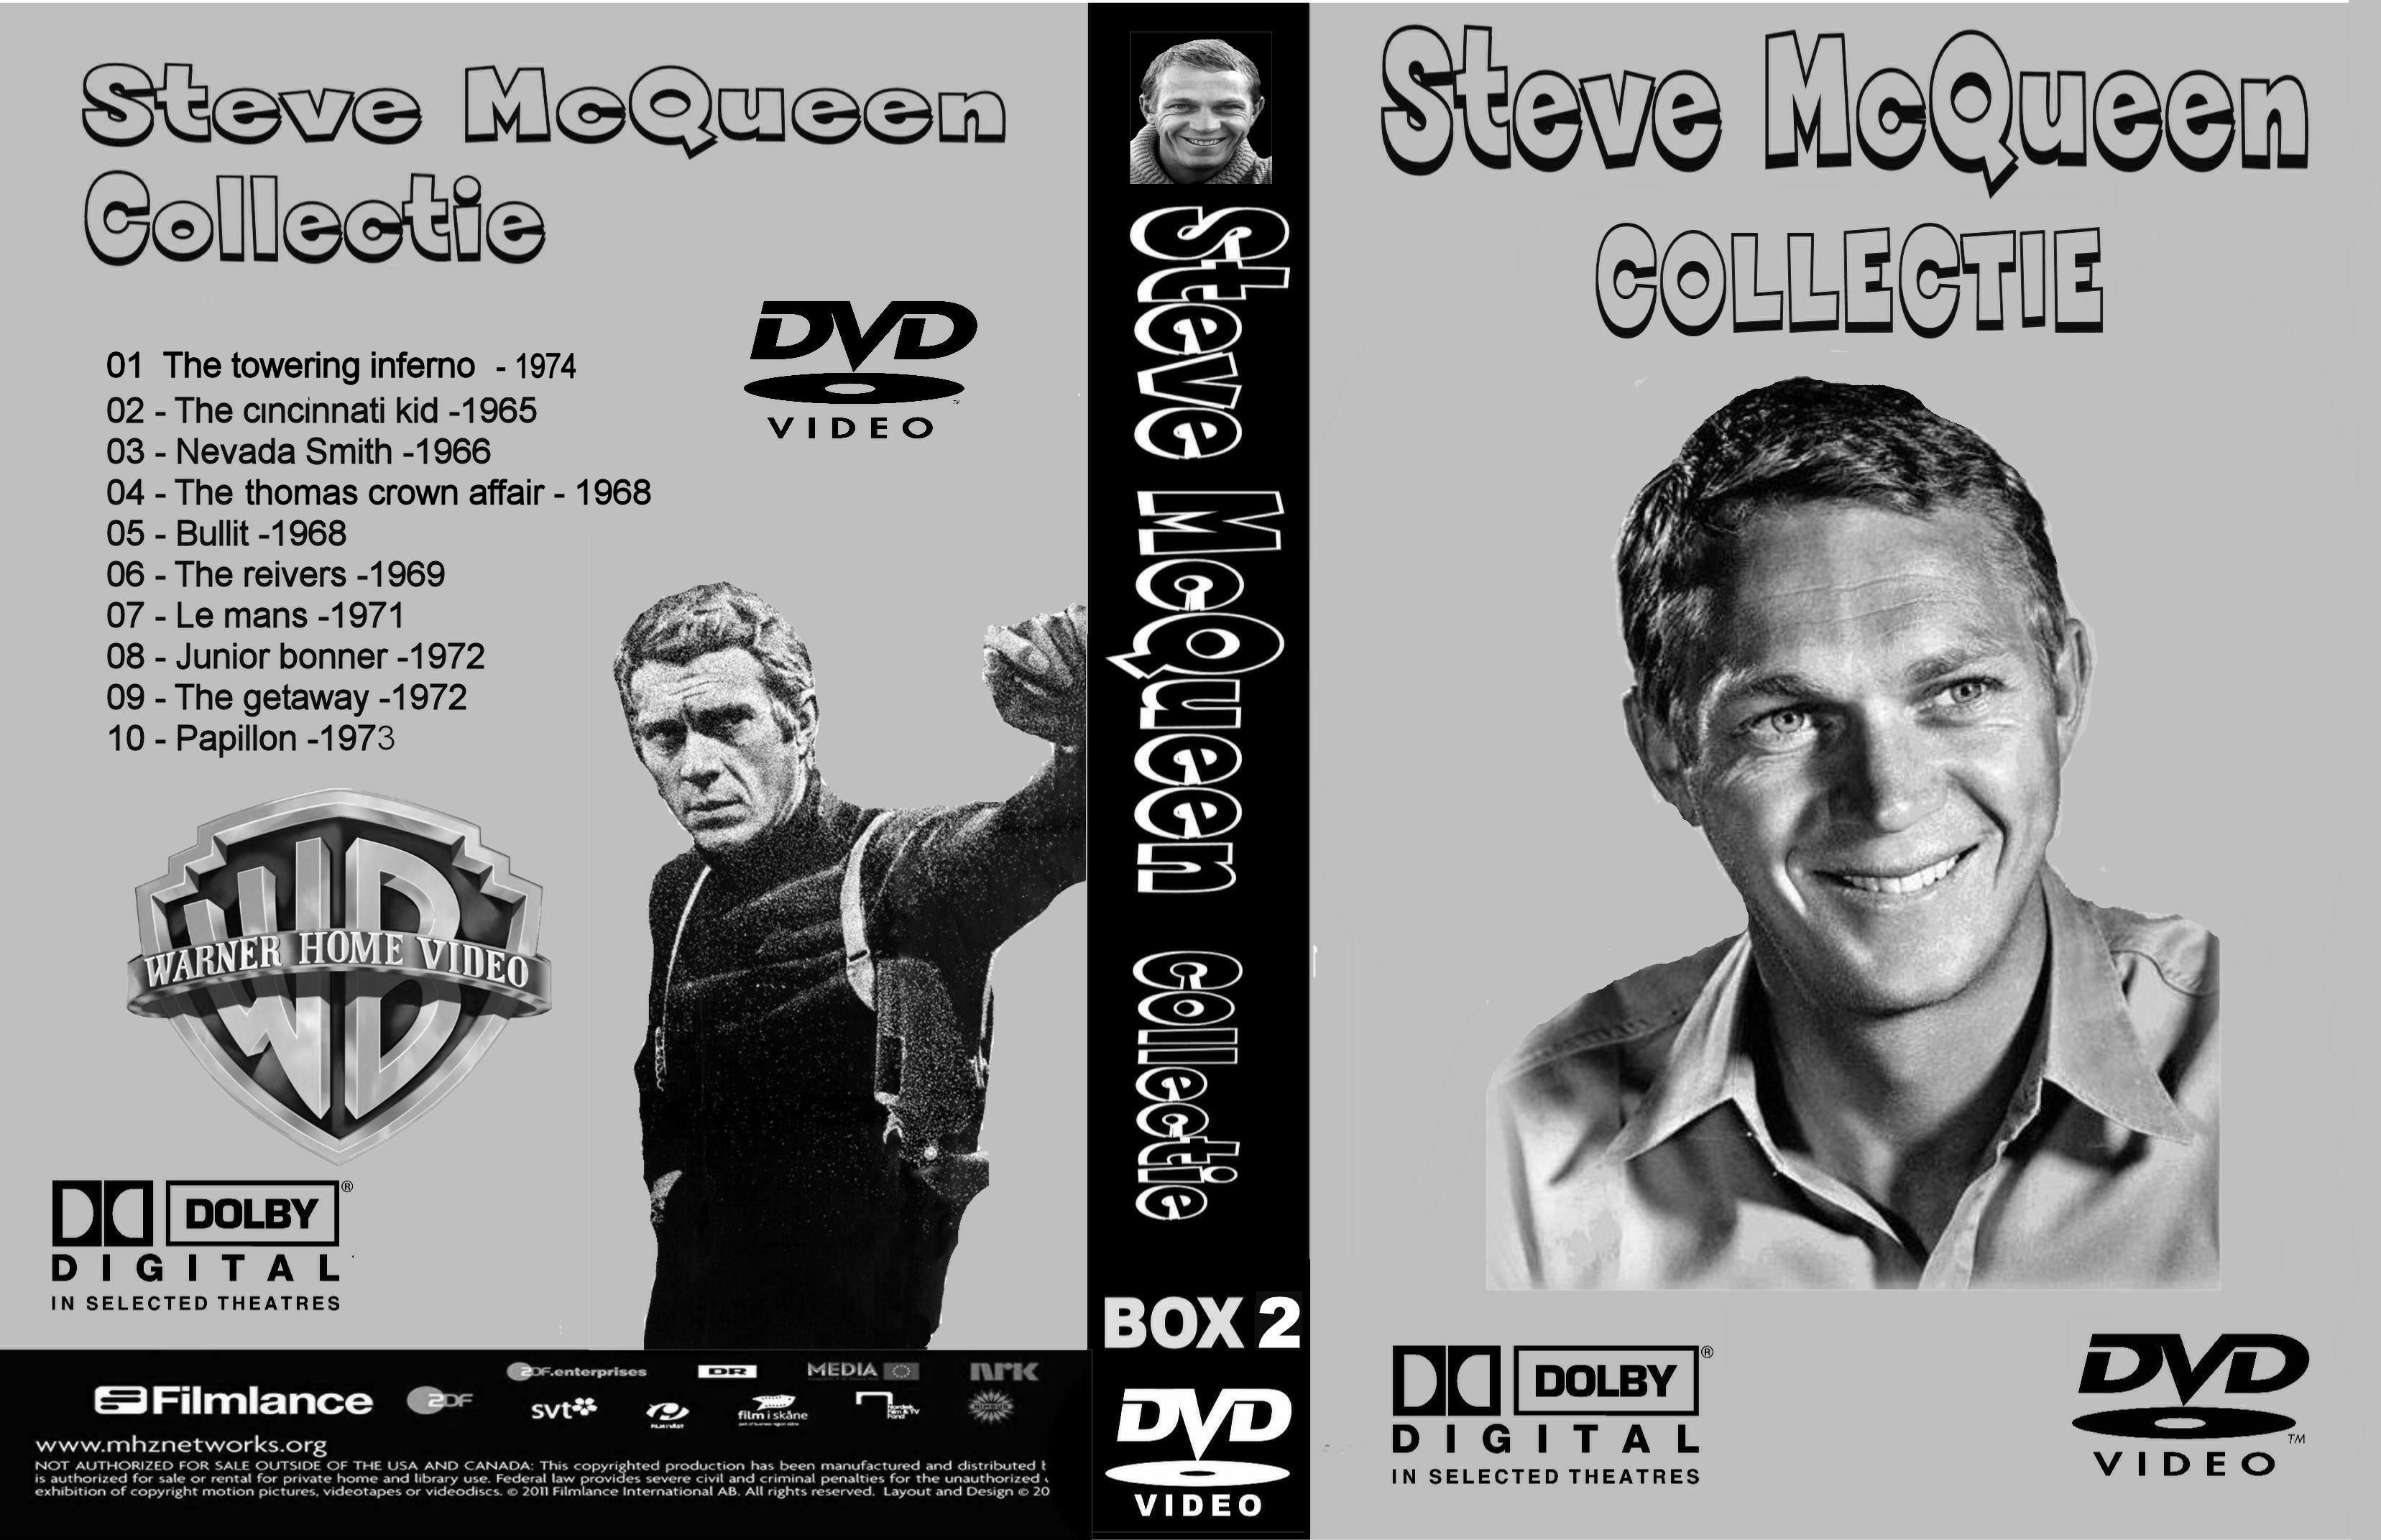 Steve McQueen Collectie Box 2 DvD 1 van 10